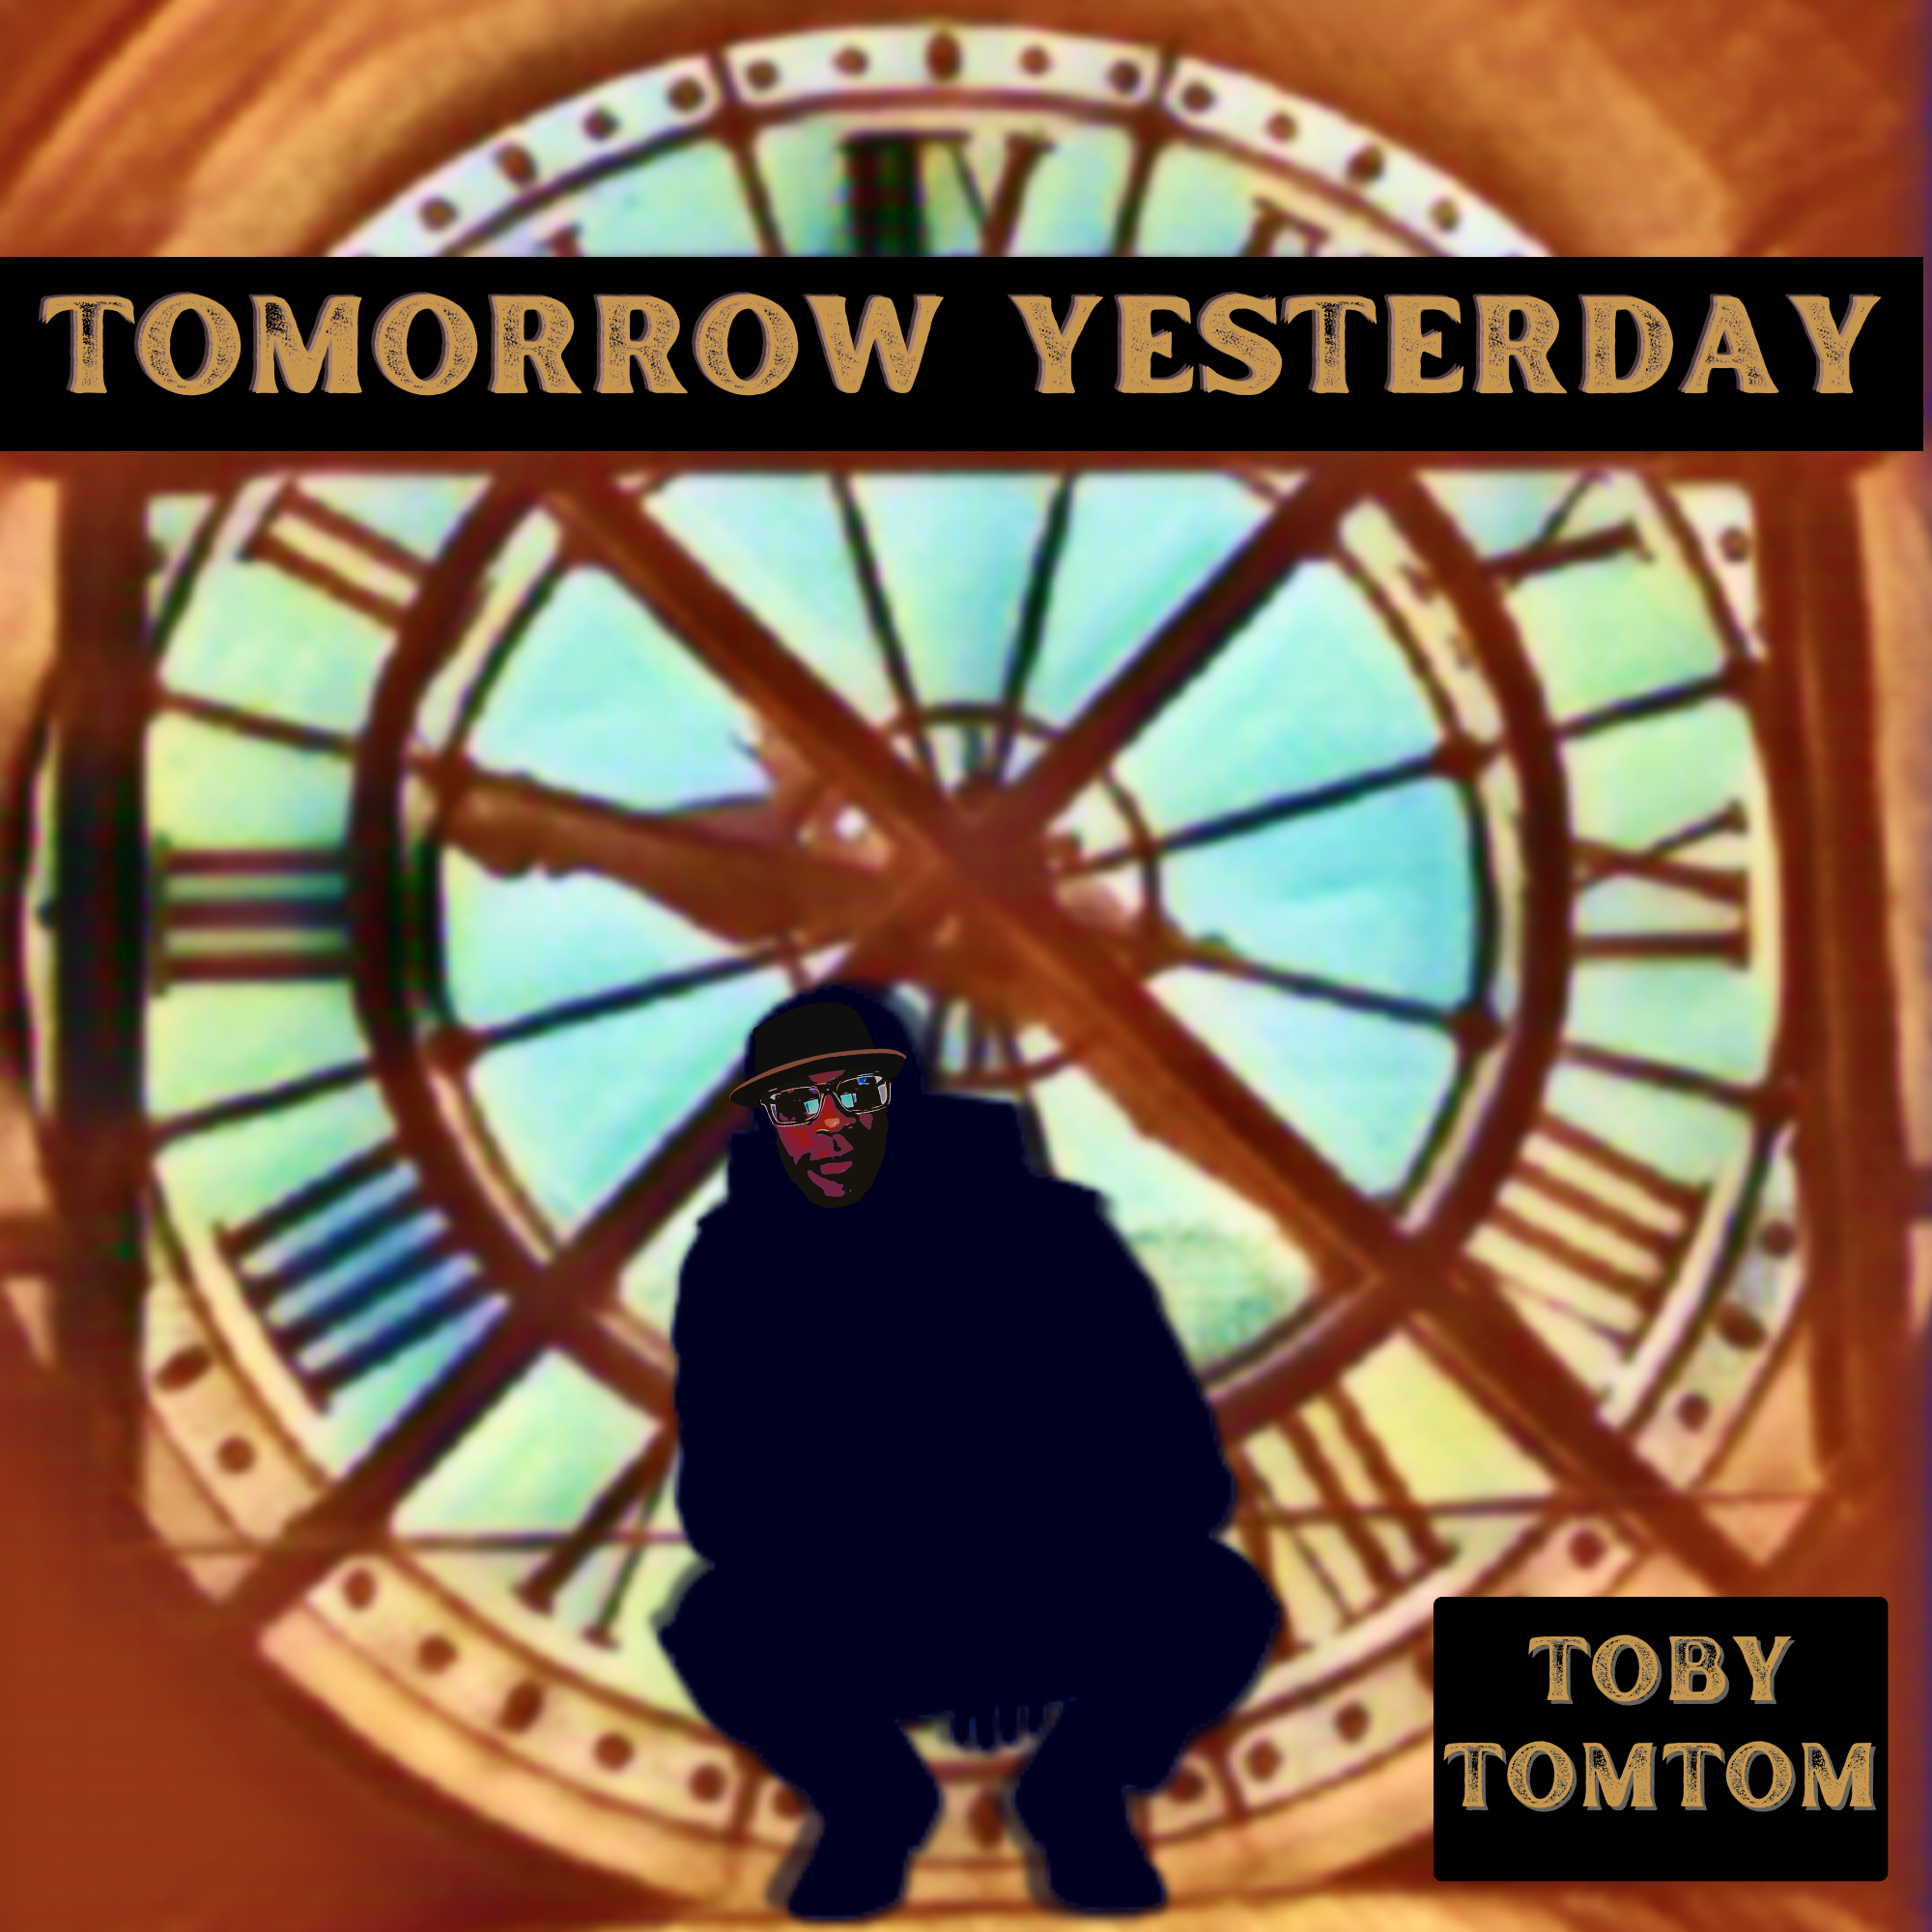 Toby TomTom – “Tomorrow Yesterday”